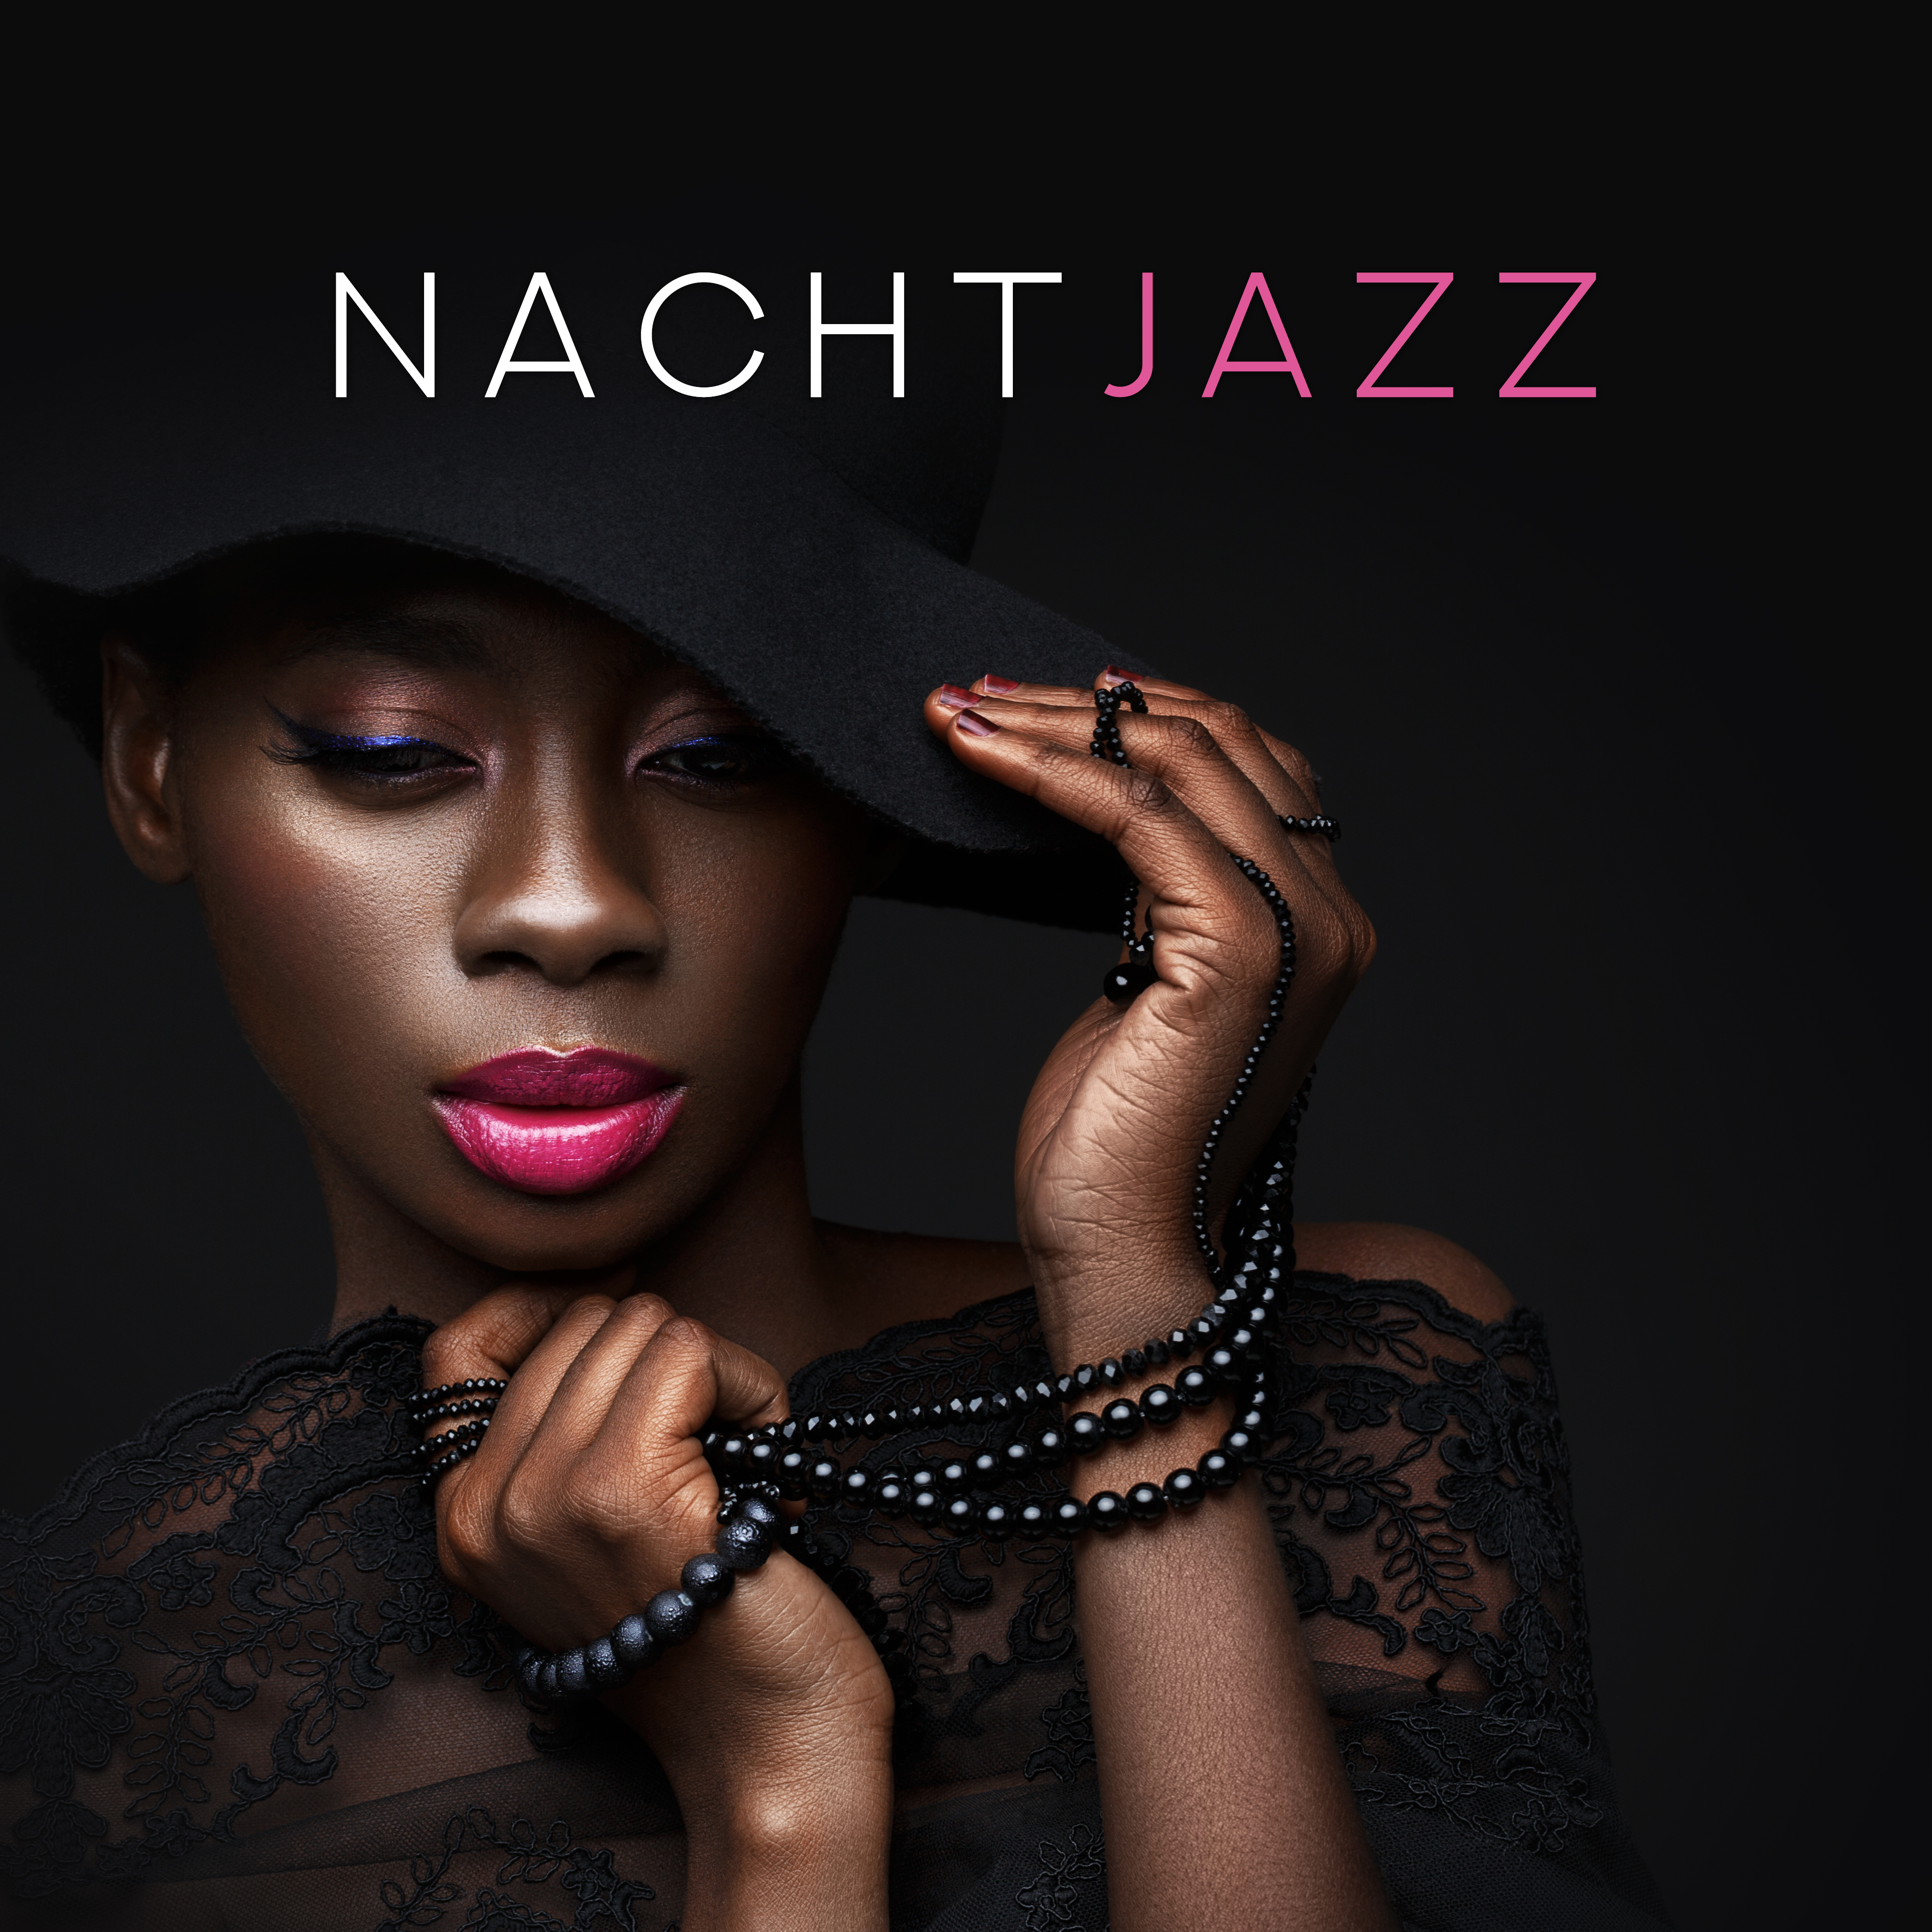 Nachtjazz - Romantischer Jazz 2019, Erotische Massage, Sinnliche Musik, Jazz für Liebhaber